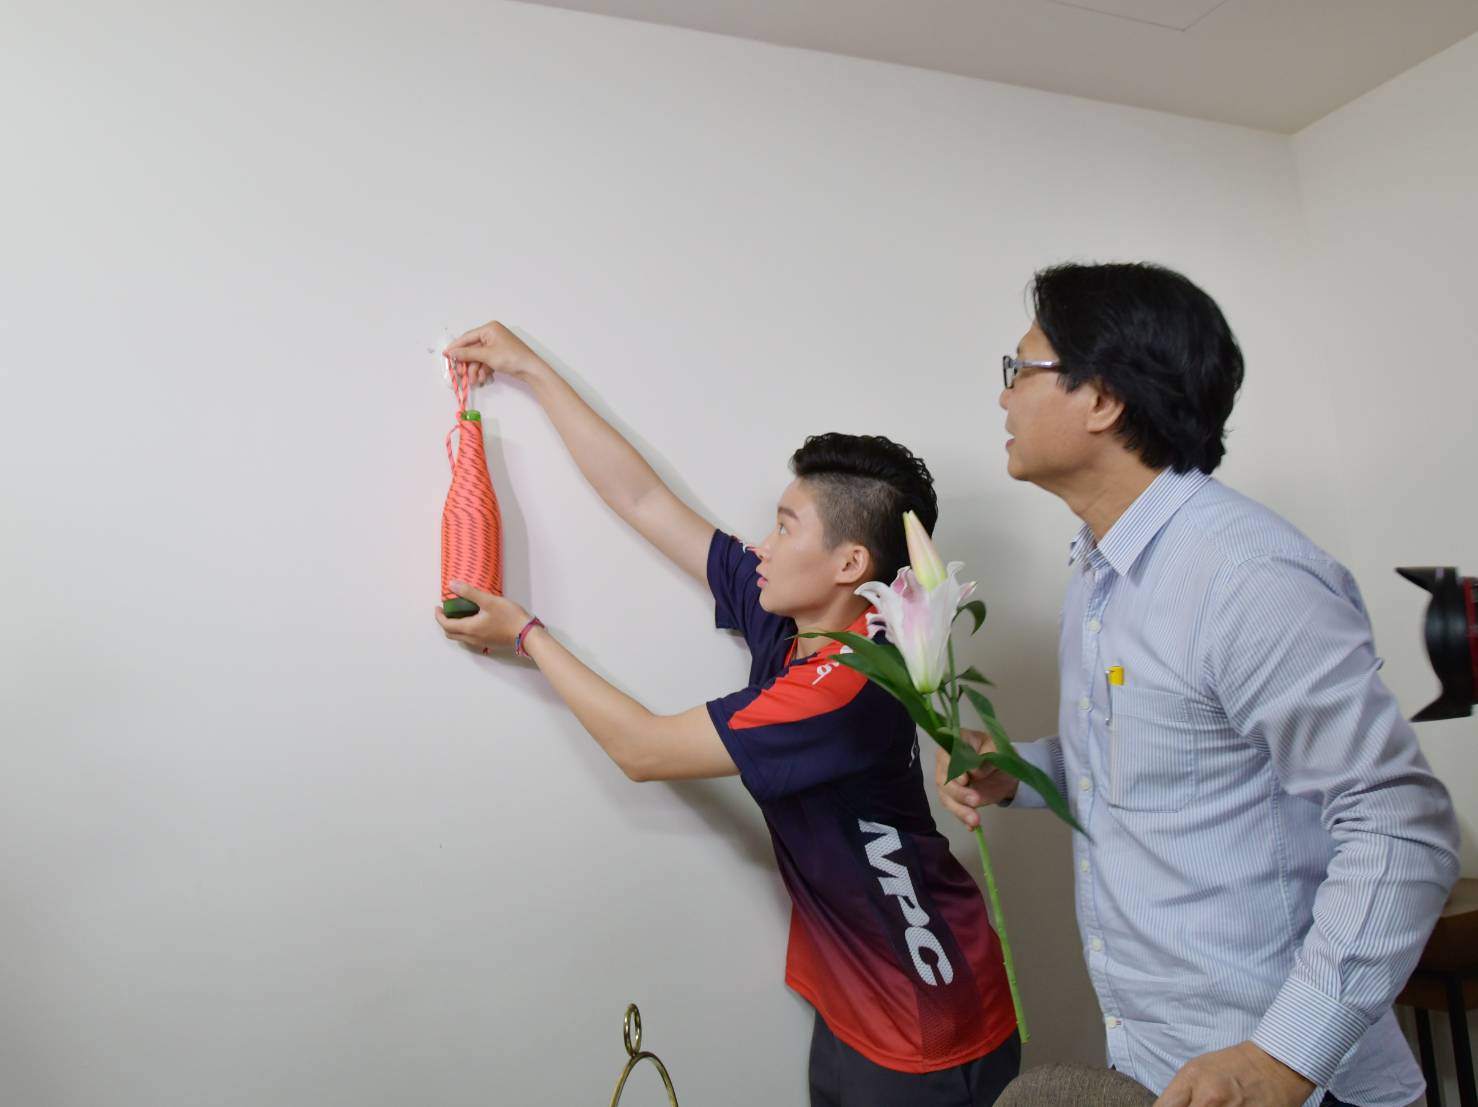 世大運滑輪溜冰金牌選手陳映竹將葉俊榮與製作的繩編花瓶掛牆賦予新房文青氛圍